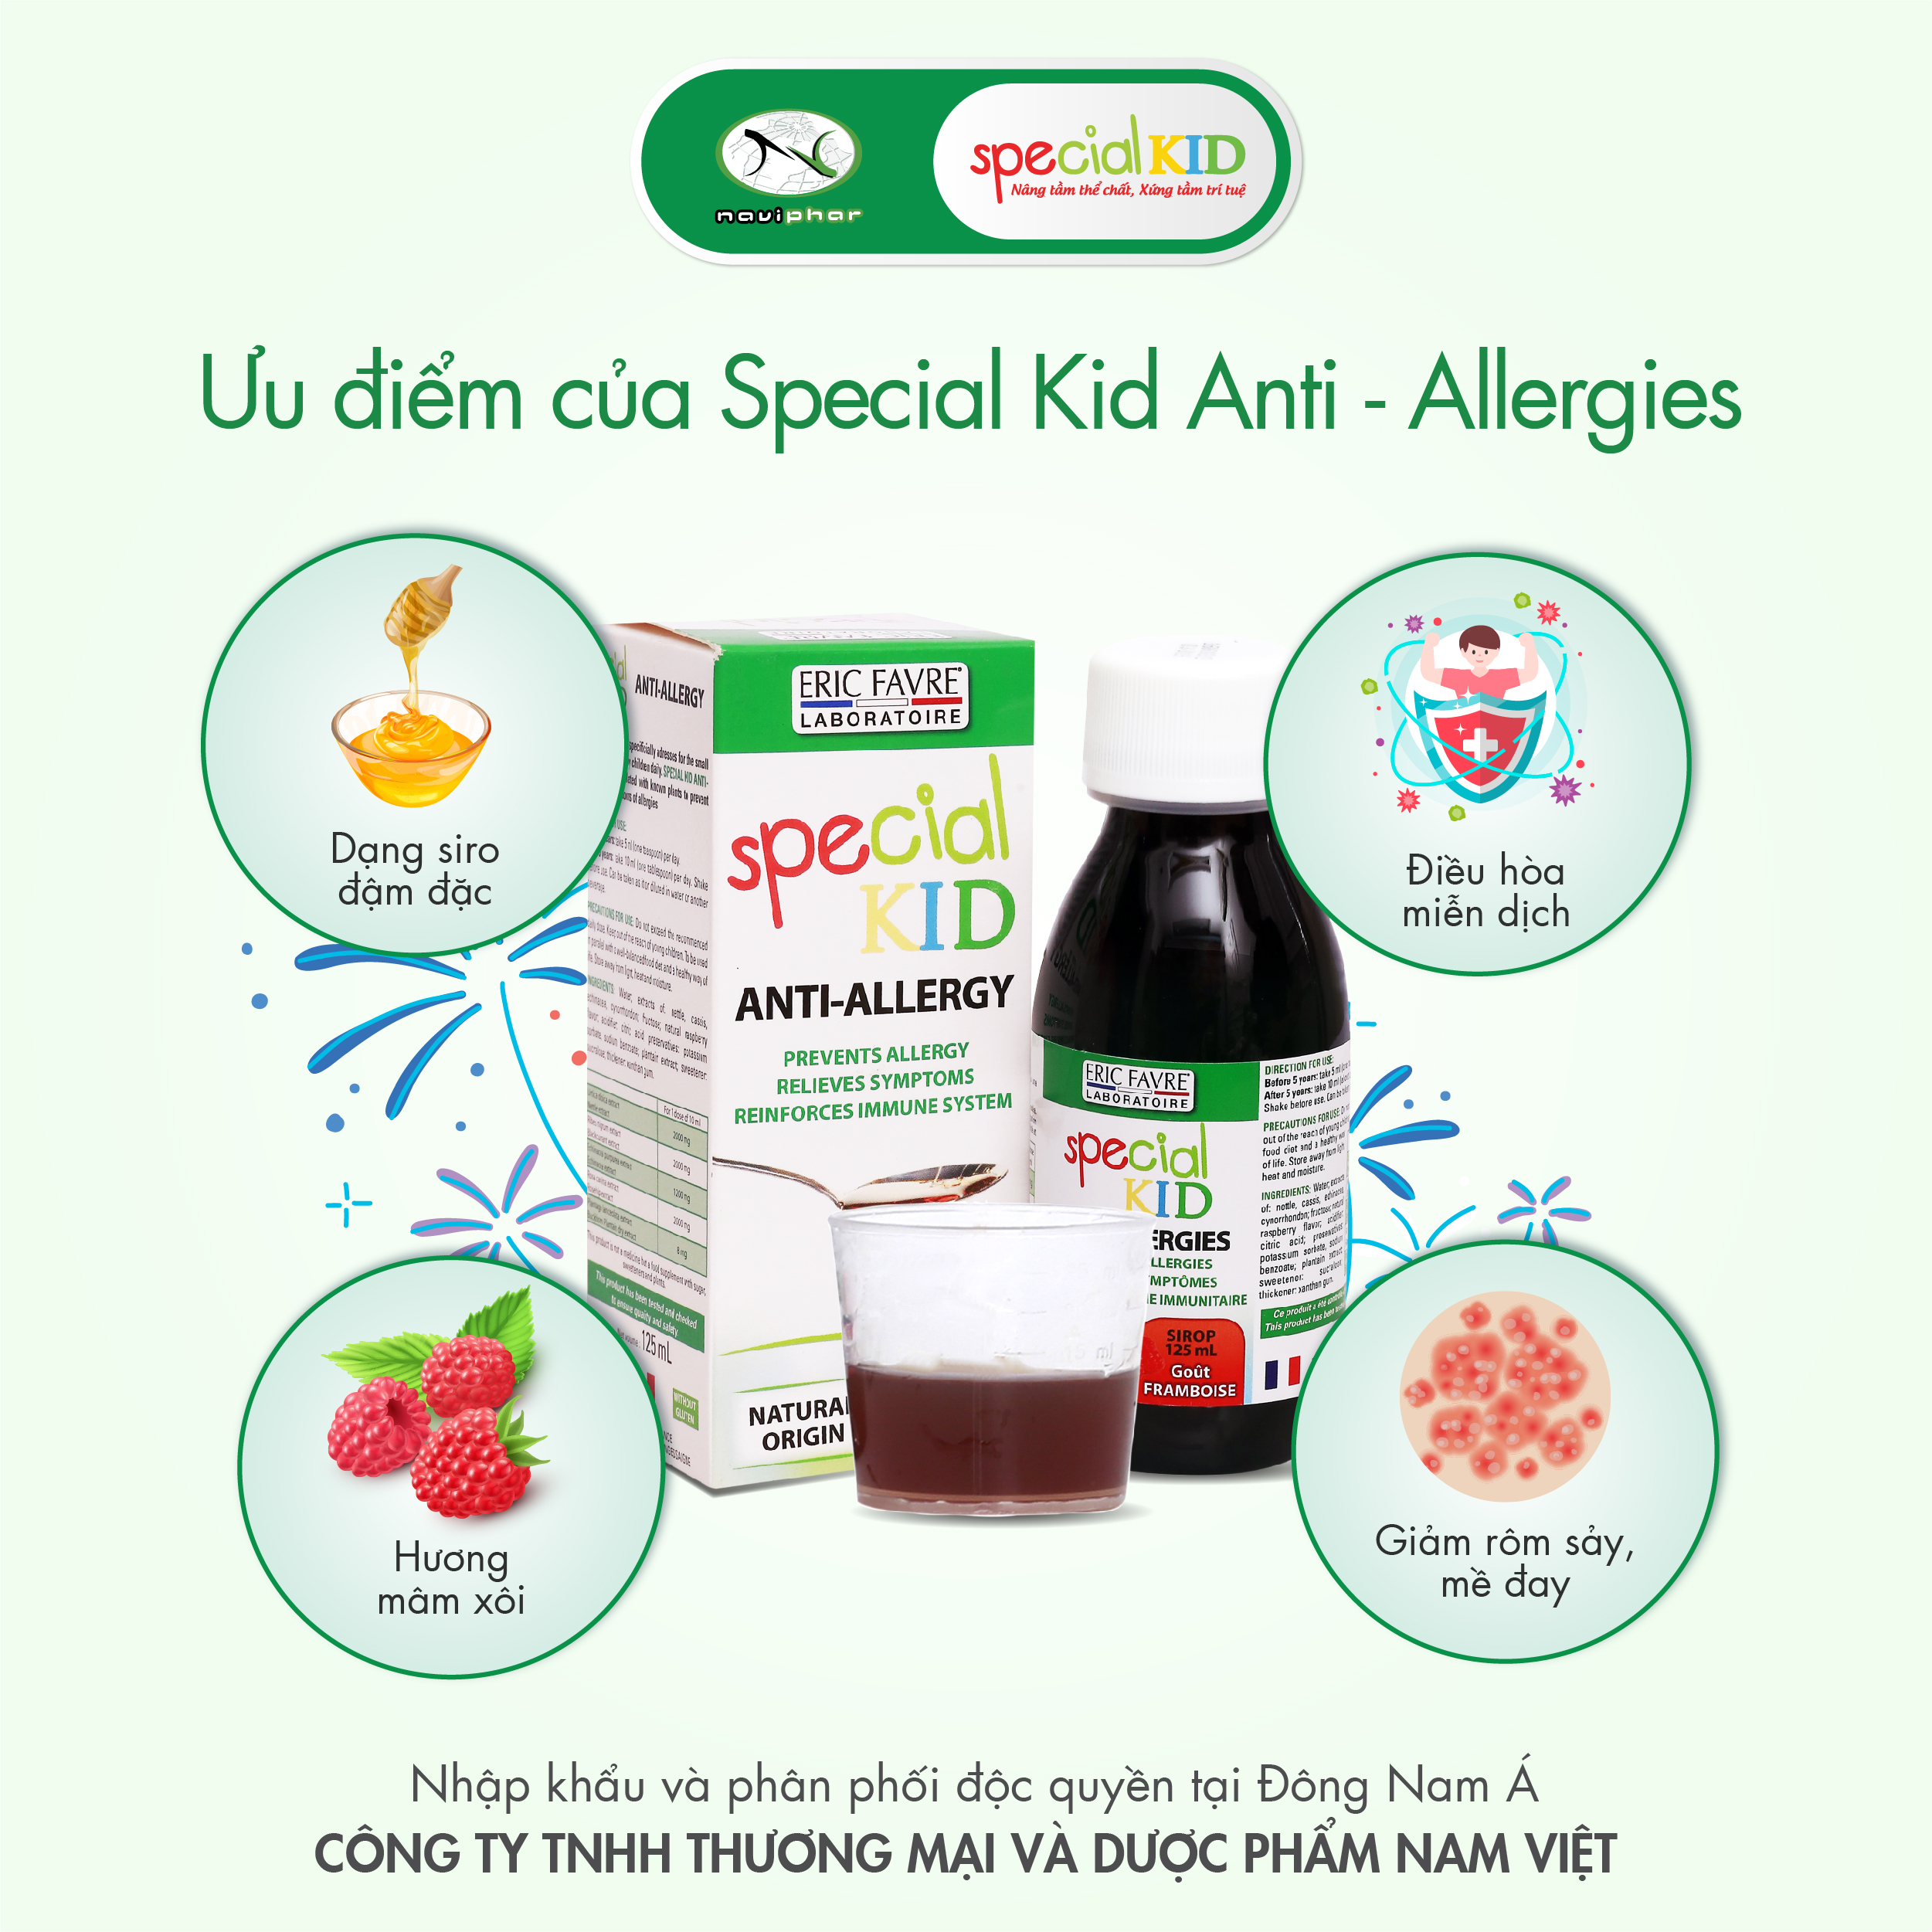 TPBVSK Special Kid Anti-Allergies - Hỗ trợ làm giảm các triệu chứng của dị ứng mẩn ngứa, nổi mề đay (125ml) [Siro – Nhập khẩu Pháp]